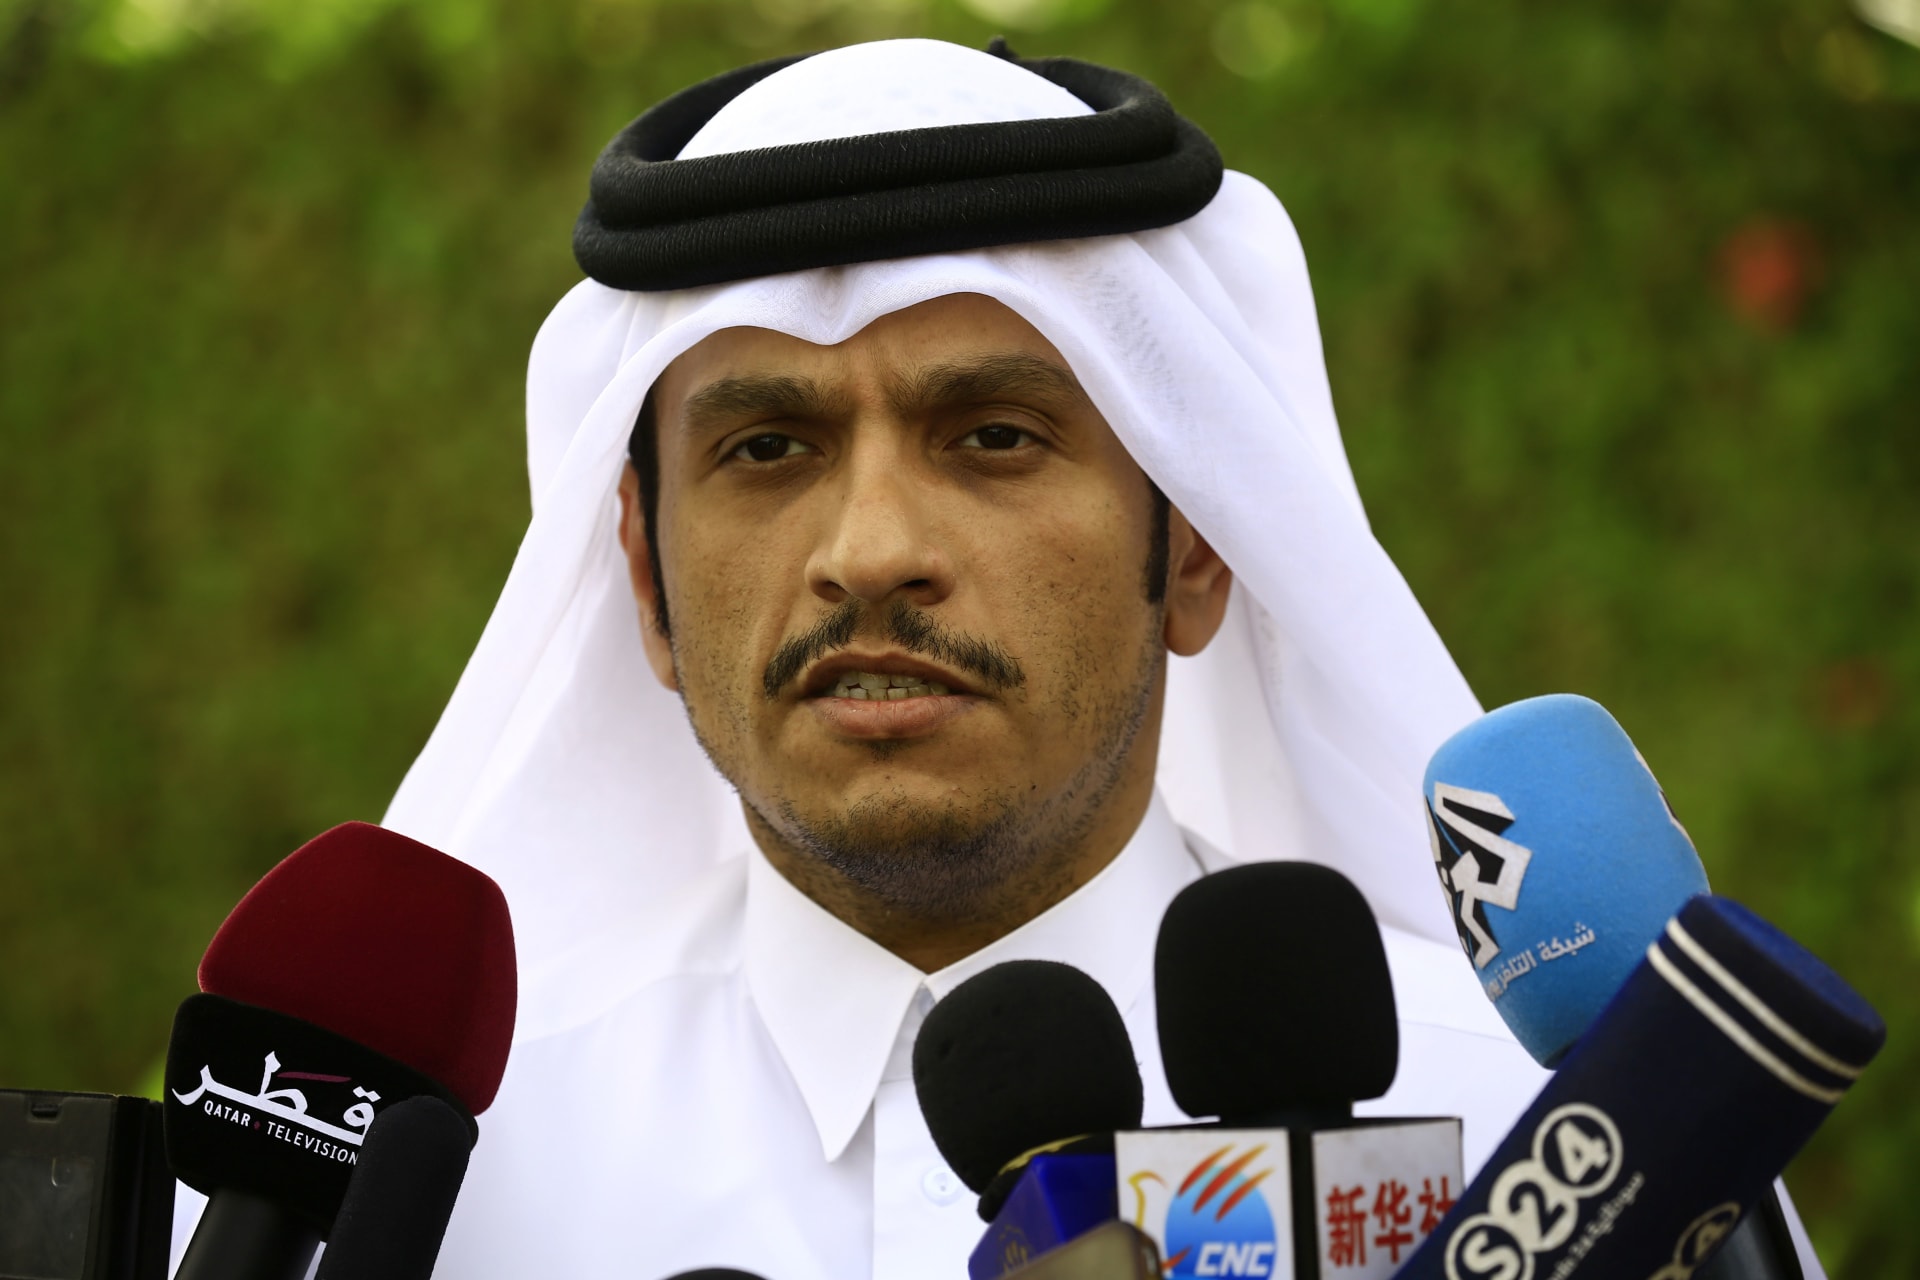 قطر: علاقتنا مع كندا "وطيدة" ويجب حماية حقوق الدول بالتعبير عن رأيها